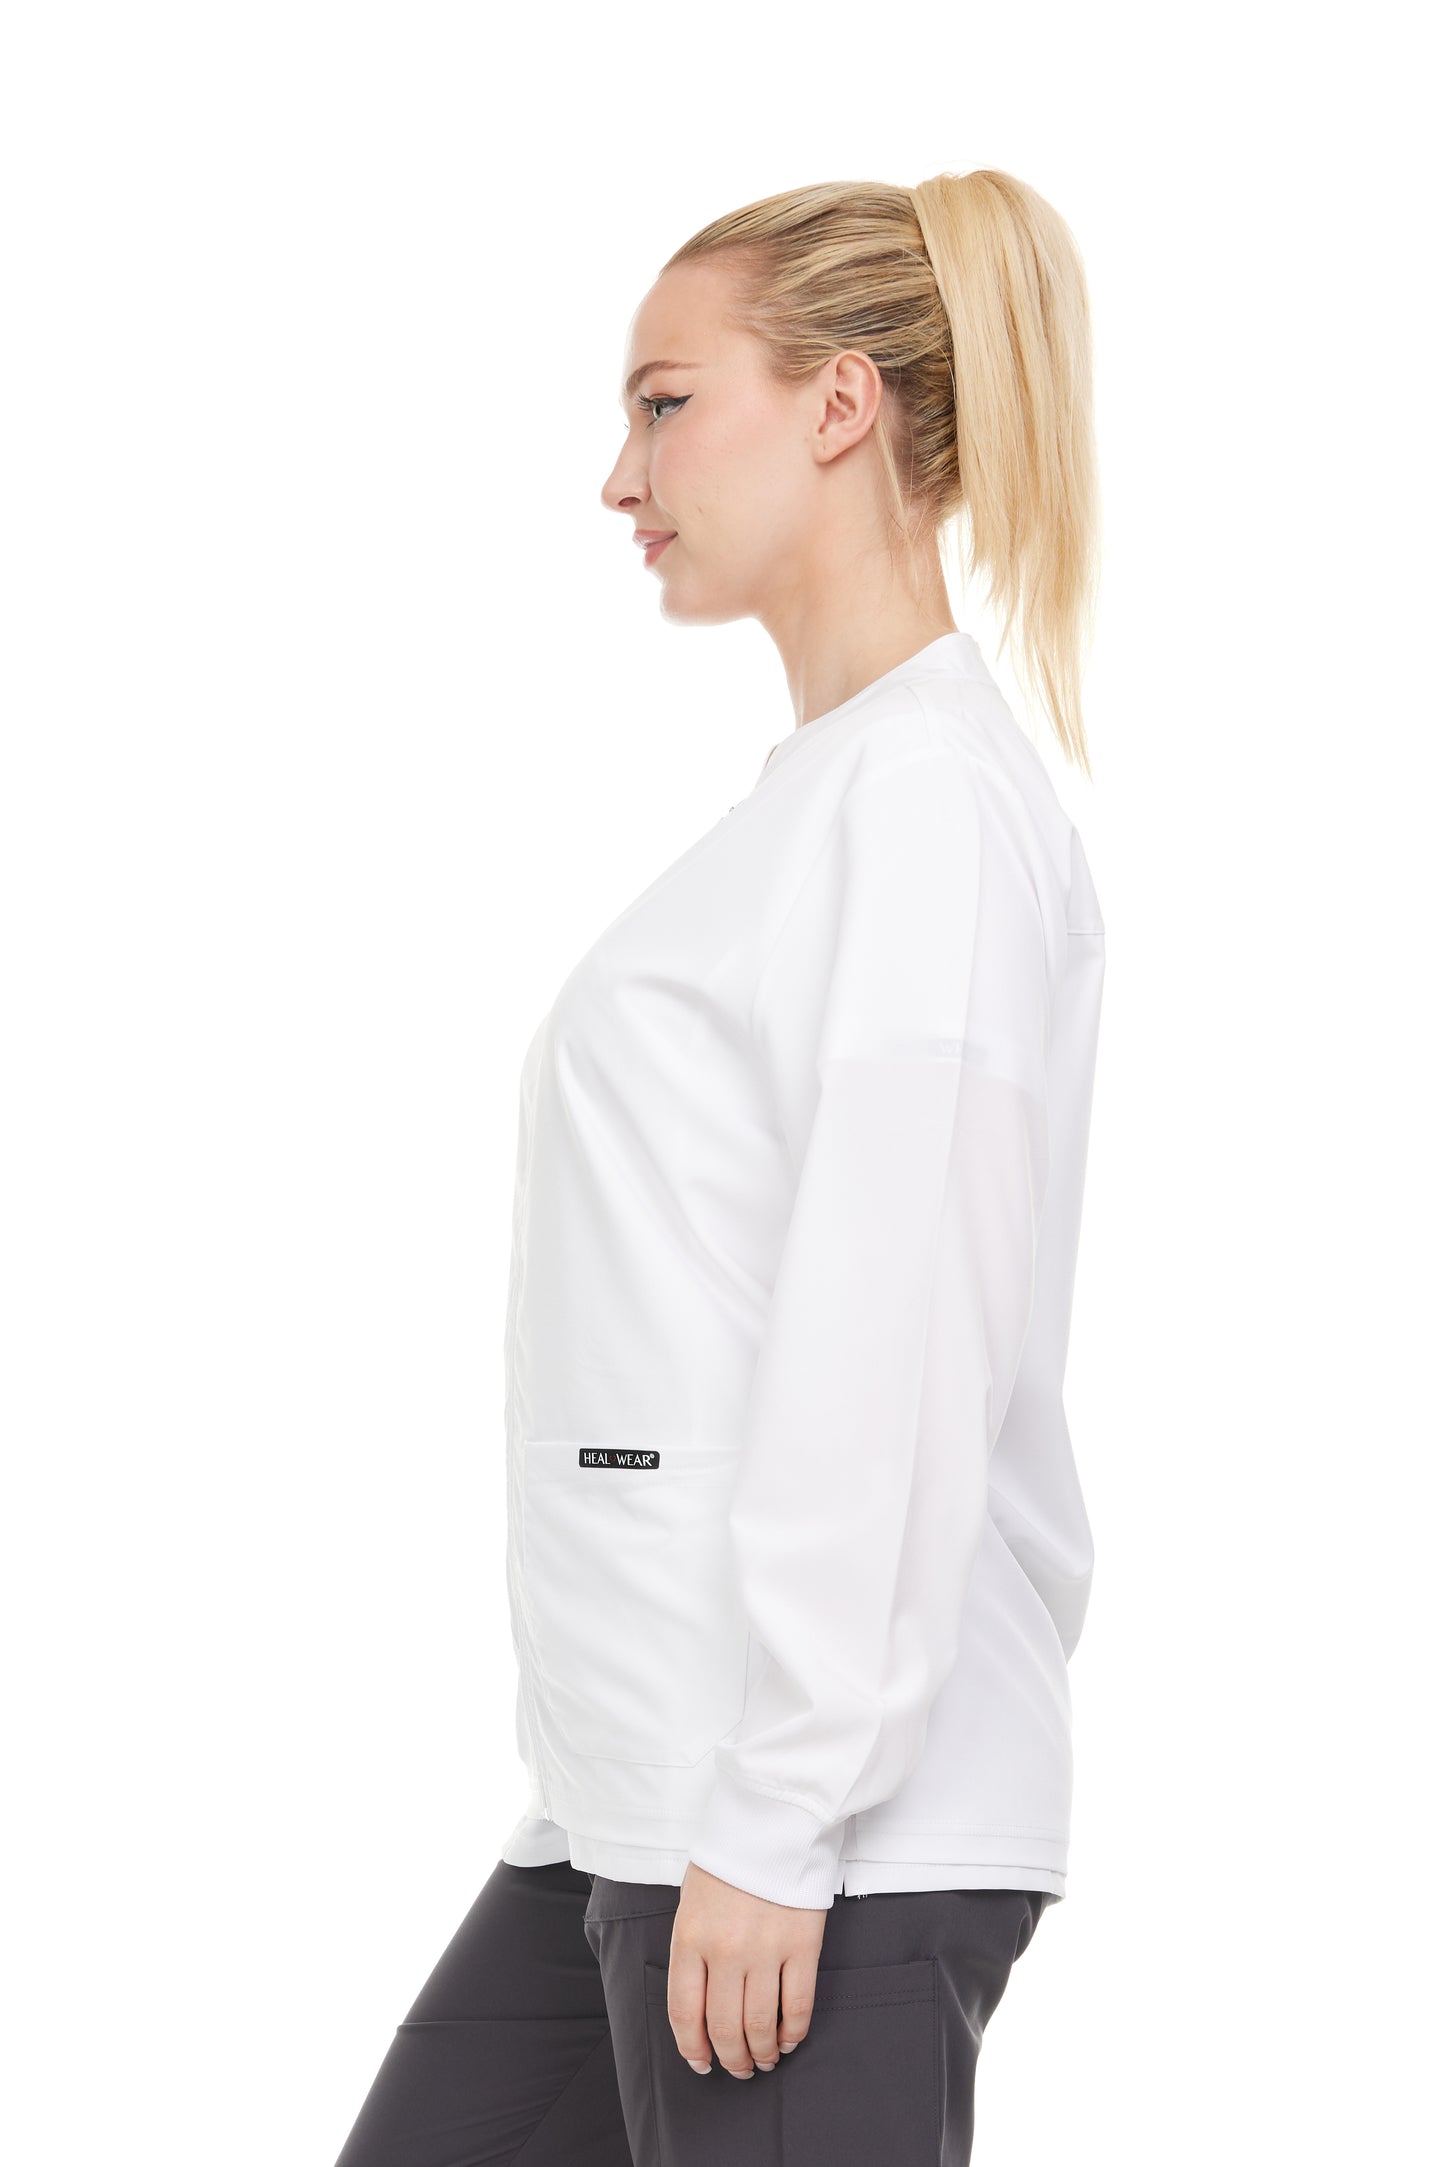 Heal+Wear Modern Women Warm Up Scrub Jacket Zip Front - DDJ009